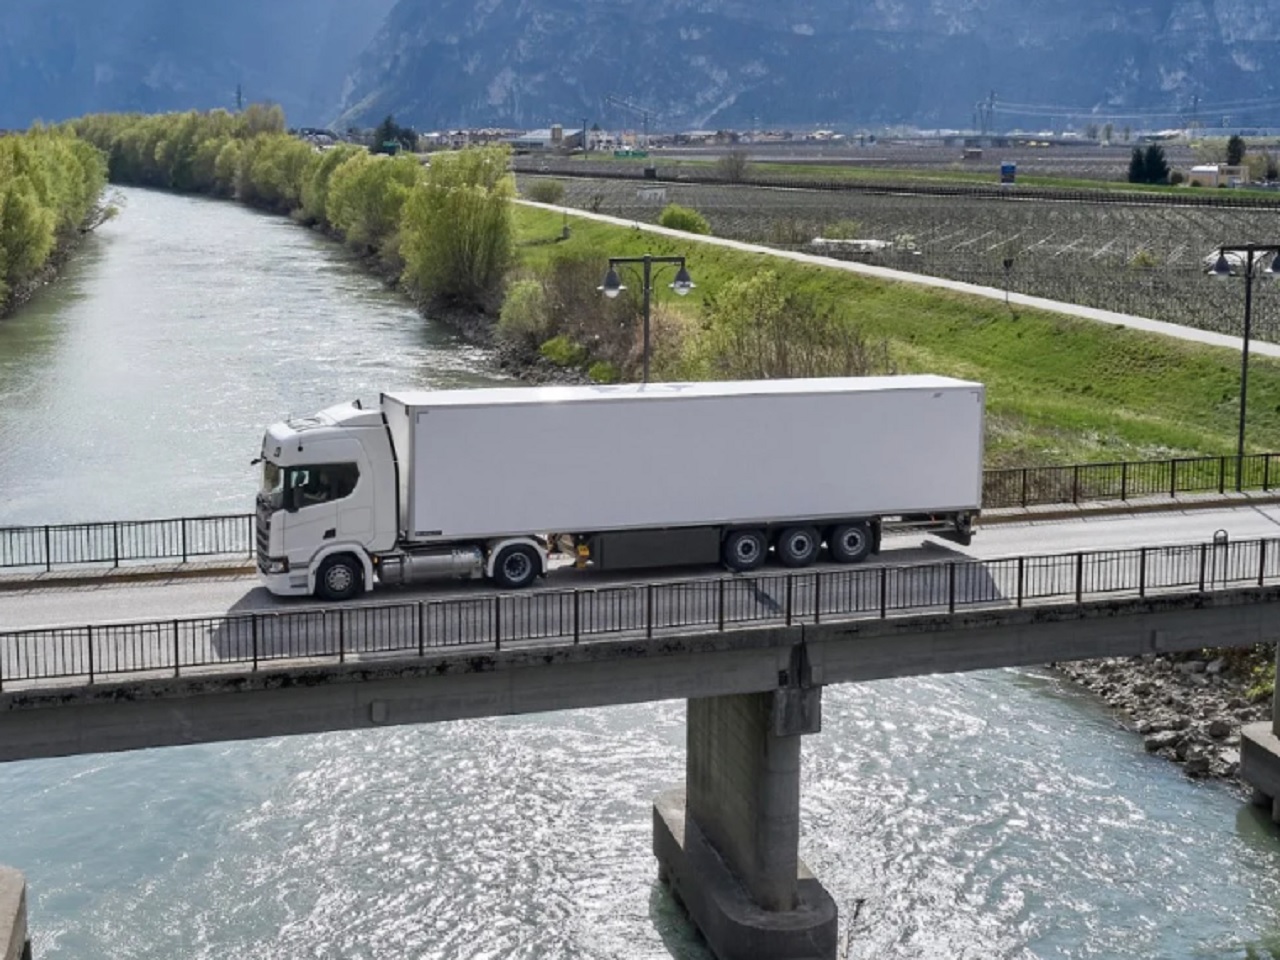 Scania afirma que motores movidos a biogás proporcionam economia de 5% no consumo de combustível